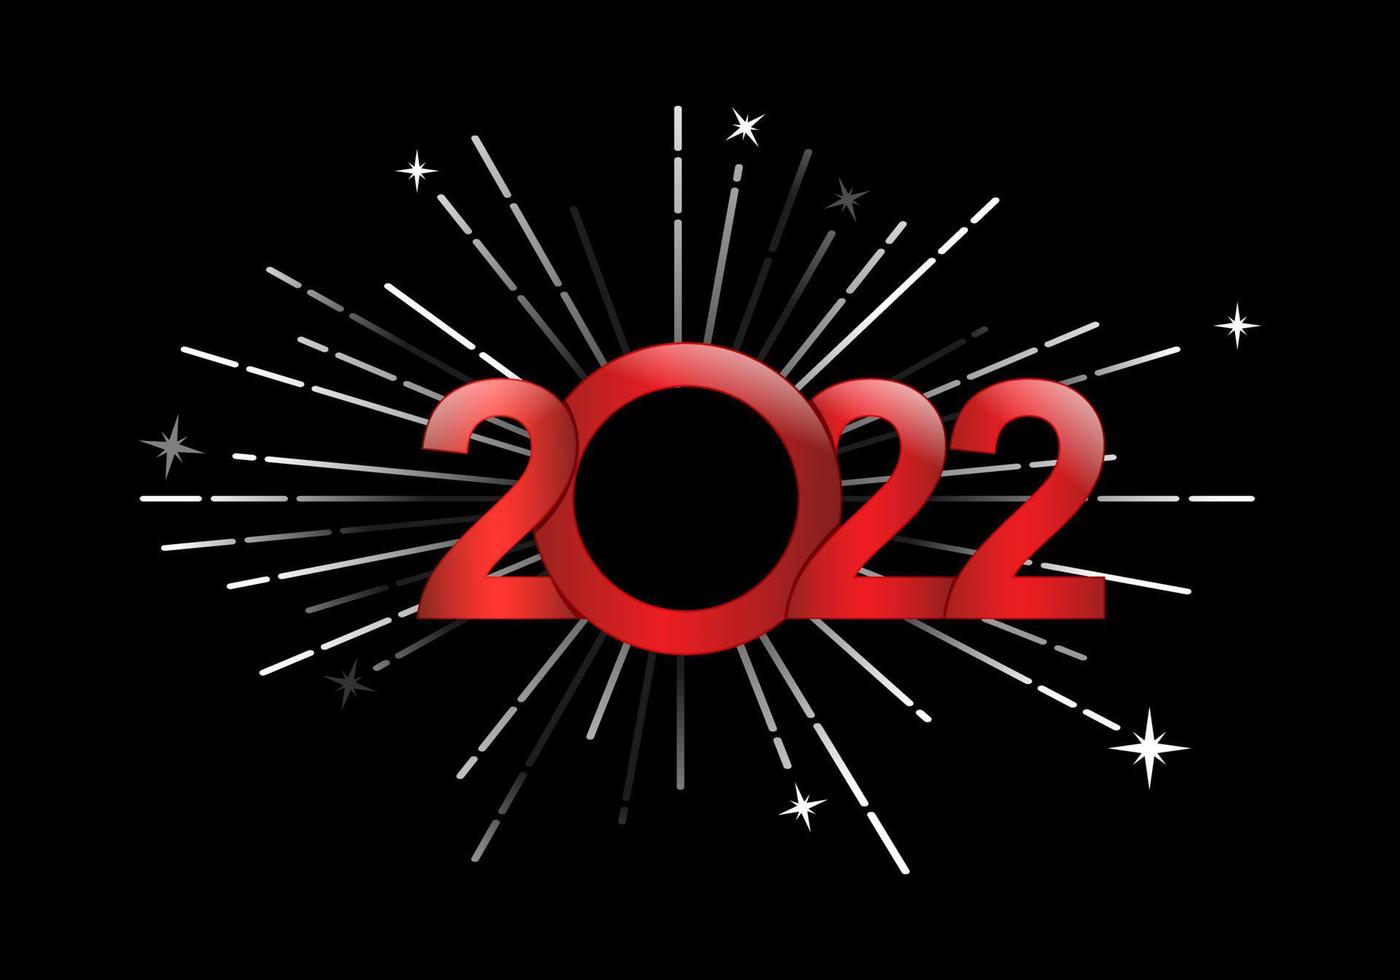 2022 nuovo anno, felice anno nuovo 2022 con disegno vettoriale di fuochi d'artificio